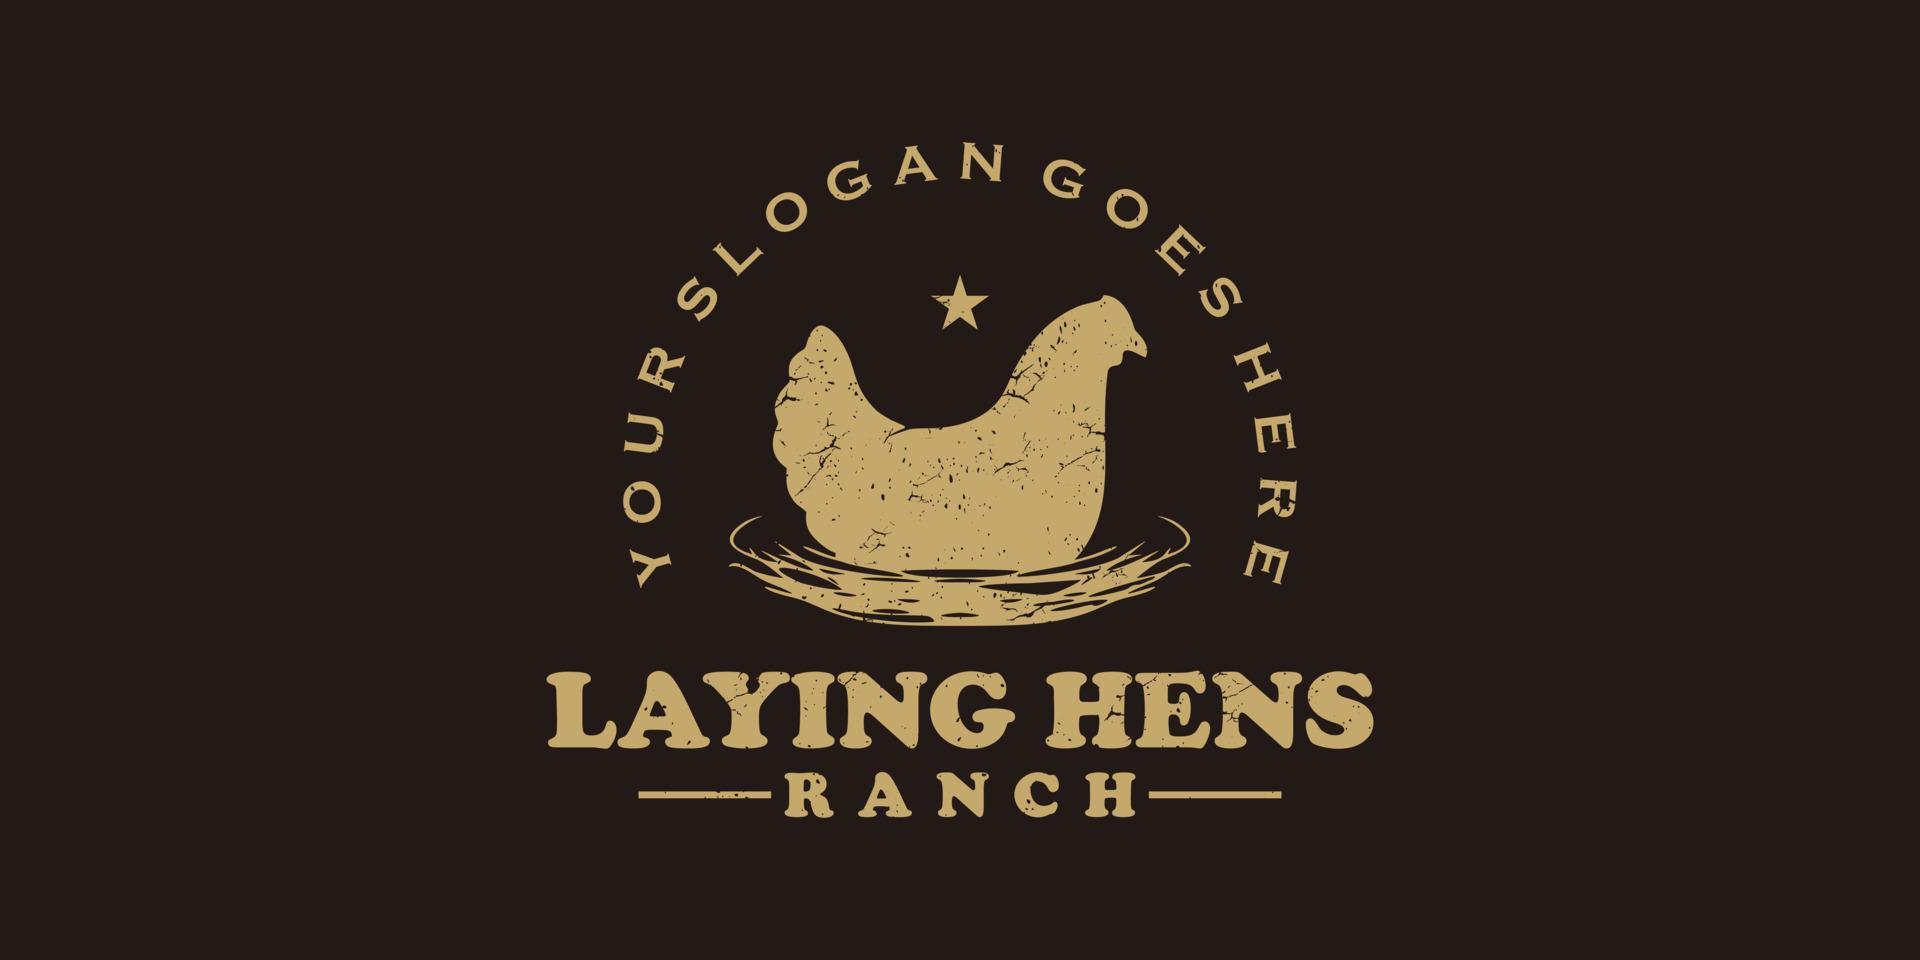 wijnoogst houdende kippen logo, boerderij logo referentie vector